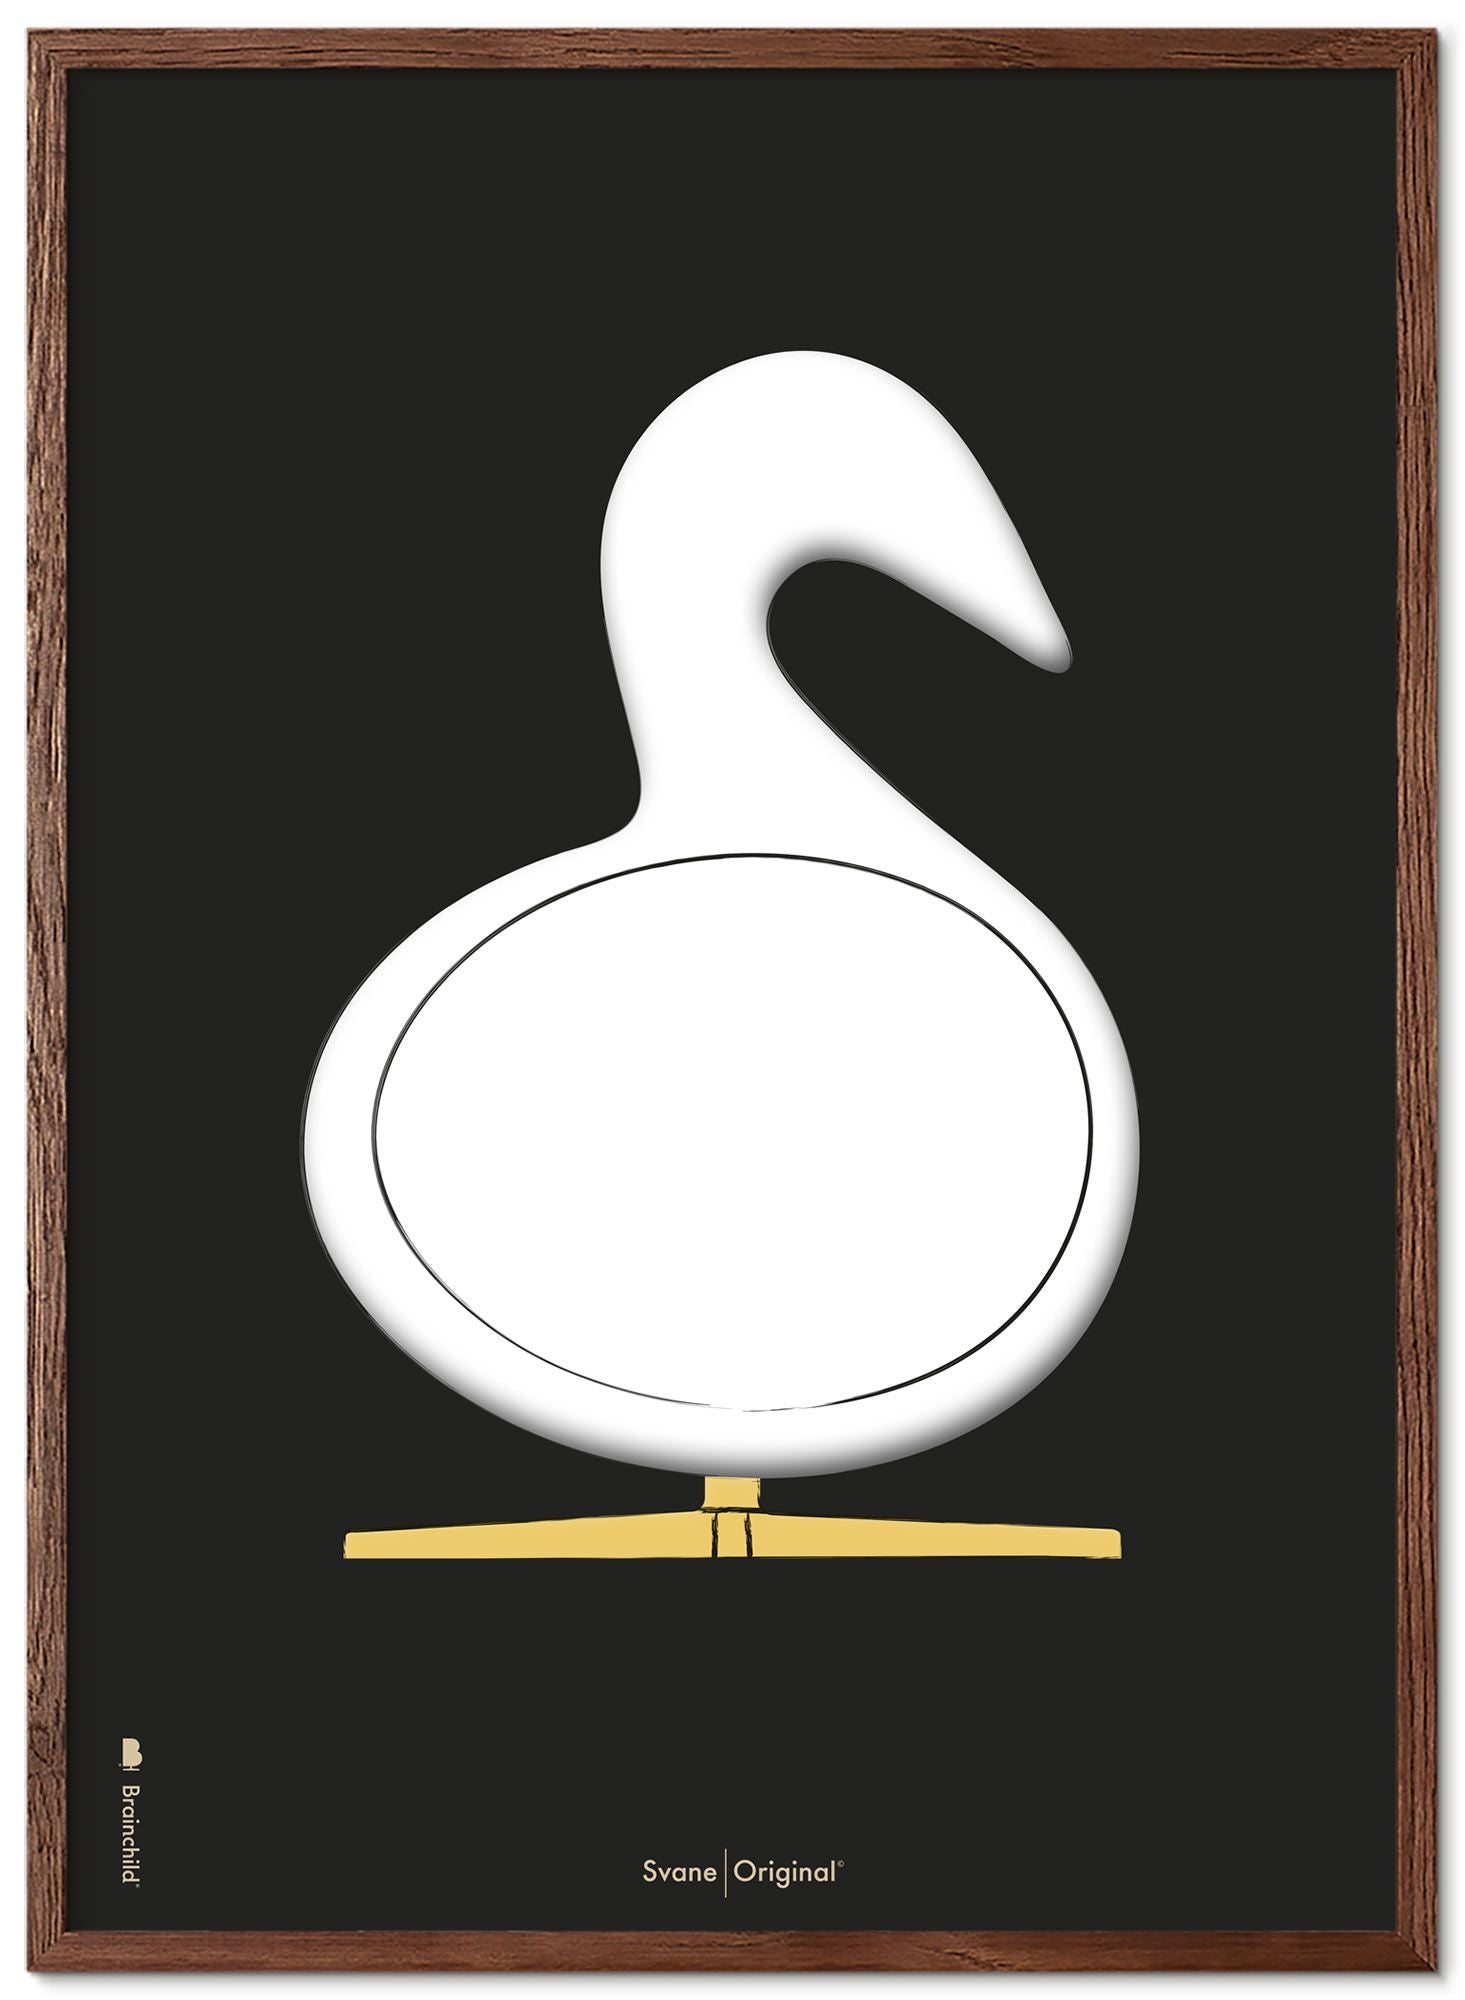 Brainchild Swan Design Sketch Poster Frame Made of Dark Wood A5, svart bakgrunn